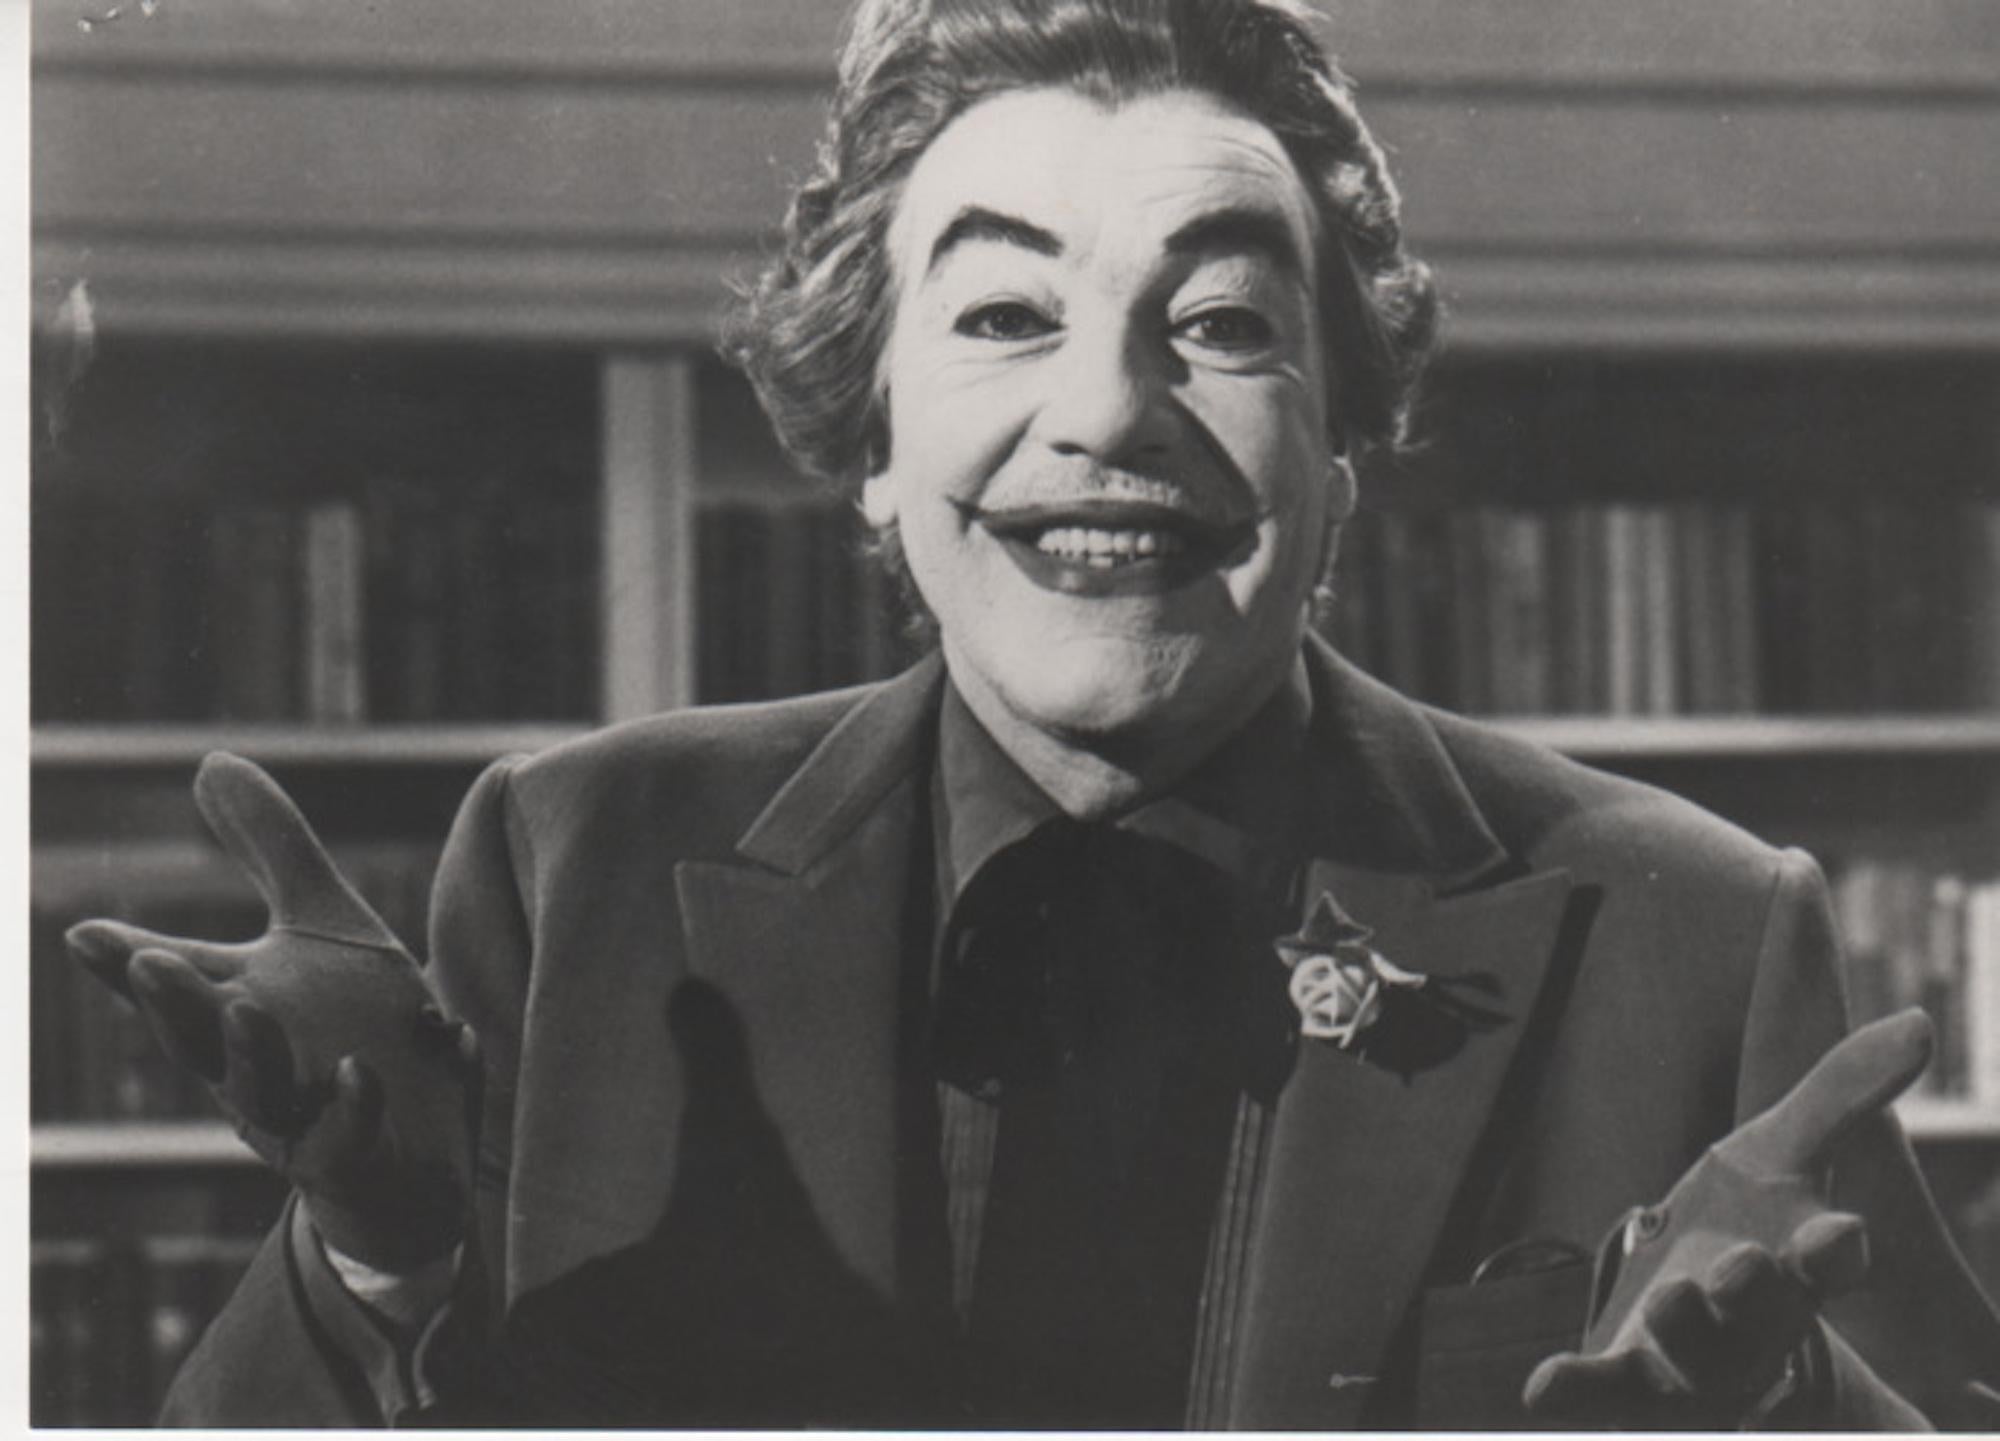 Cesar Romero sous le nom de « The Joker » - Photo vintage -1966